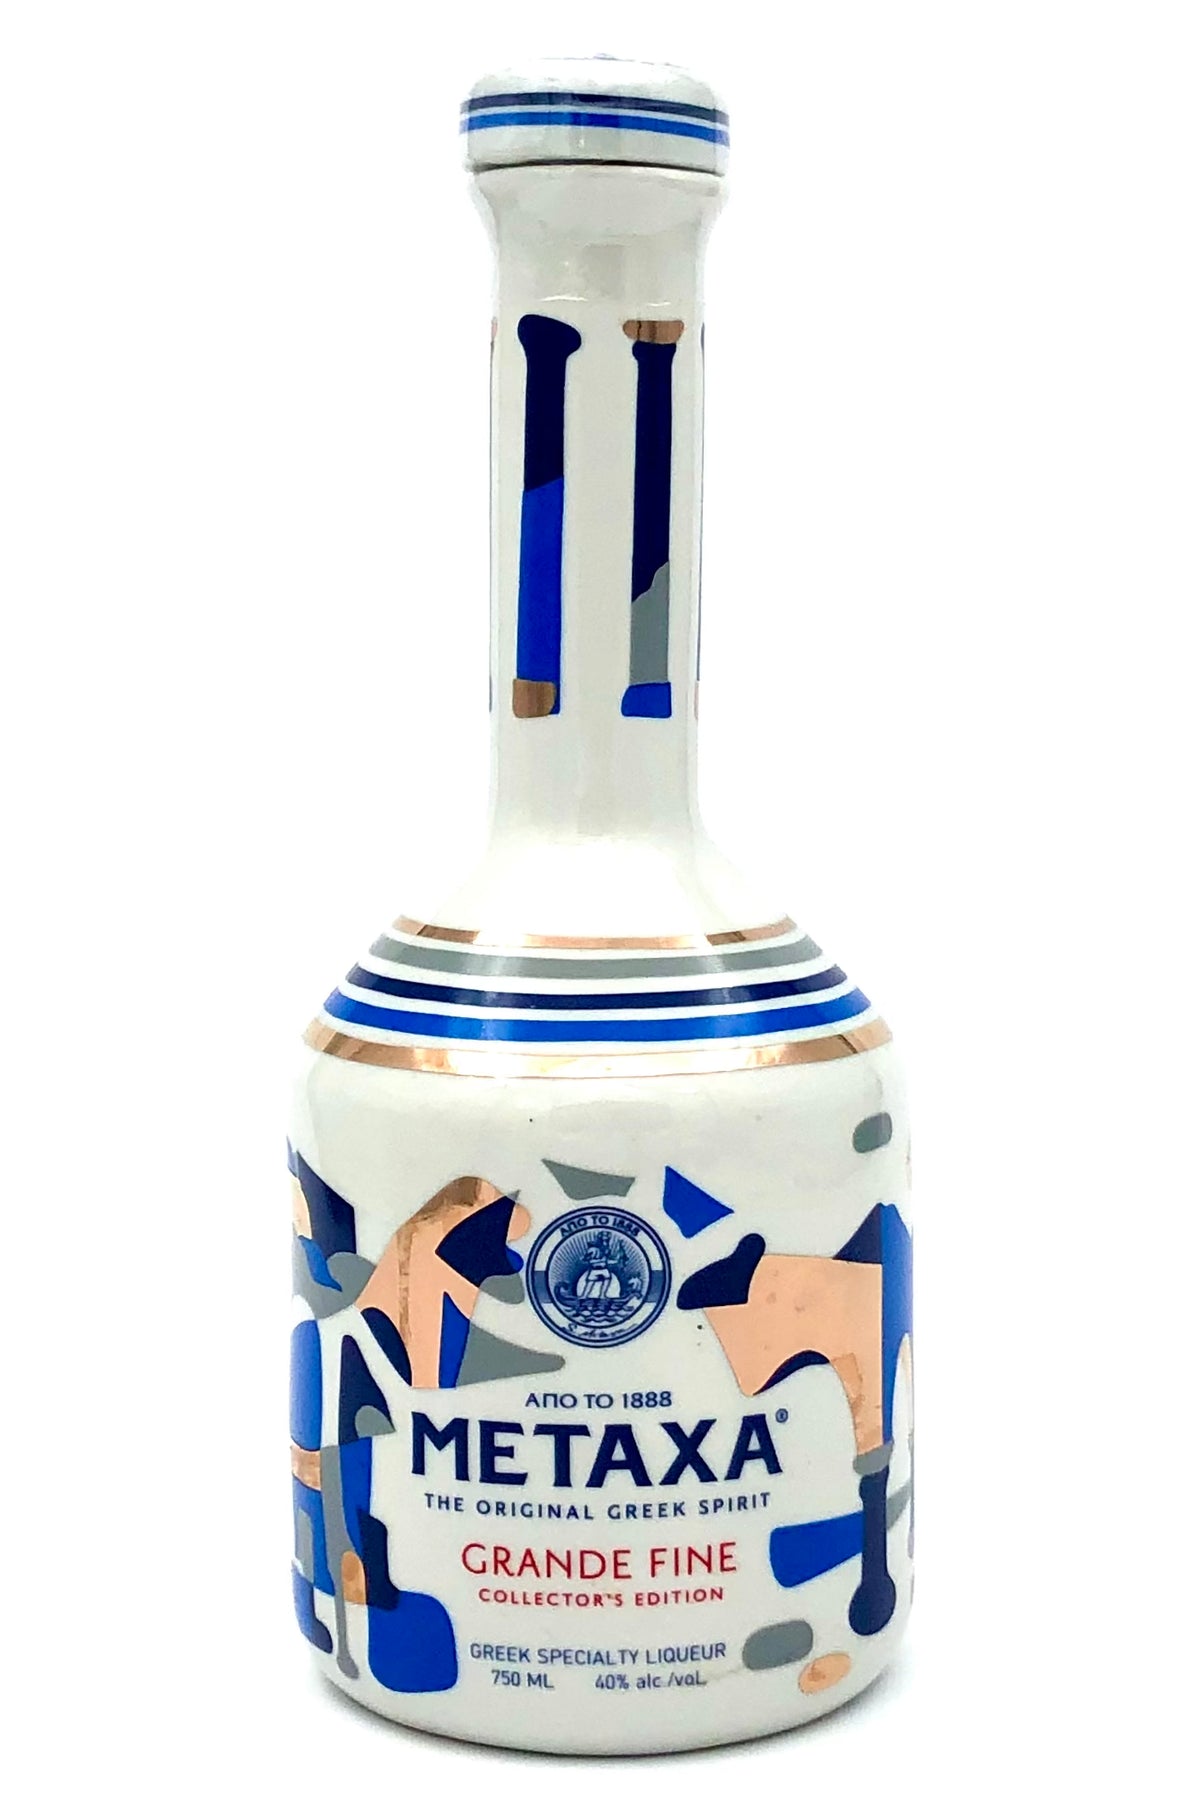 Metaxa Grand Fine Greek Liqueur